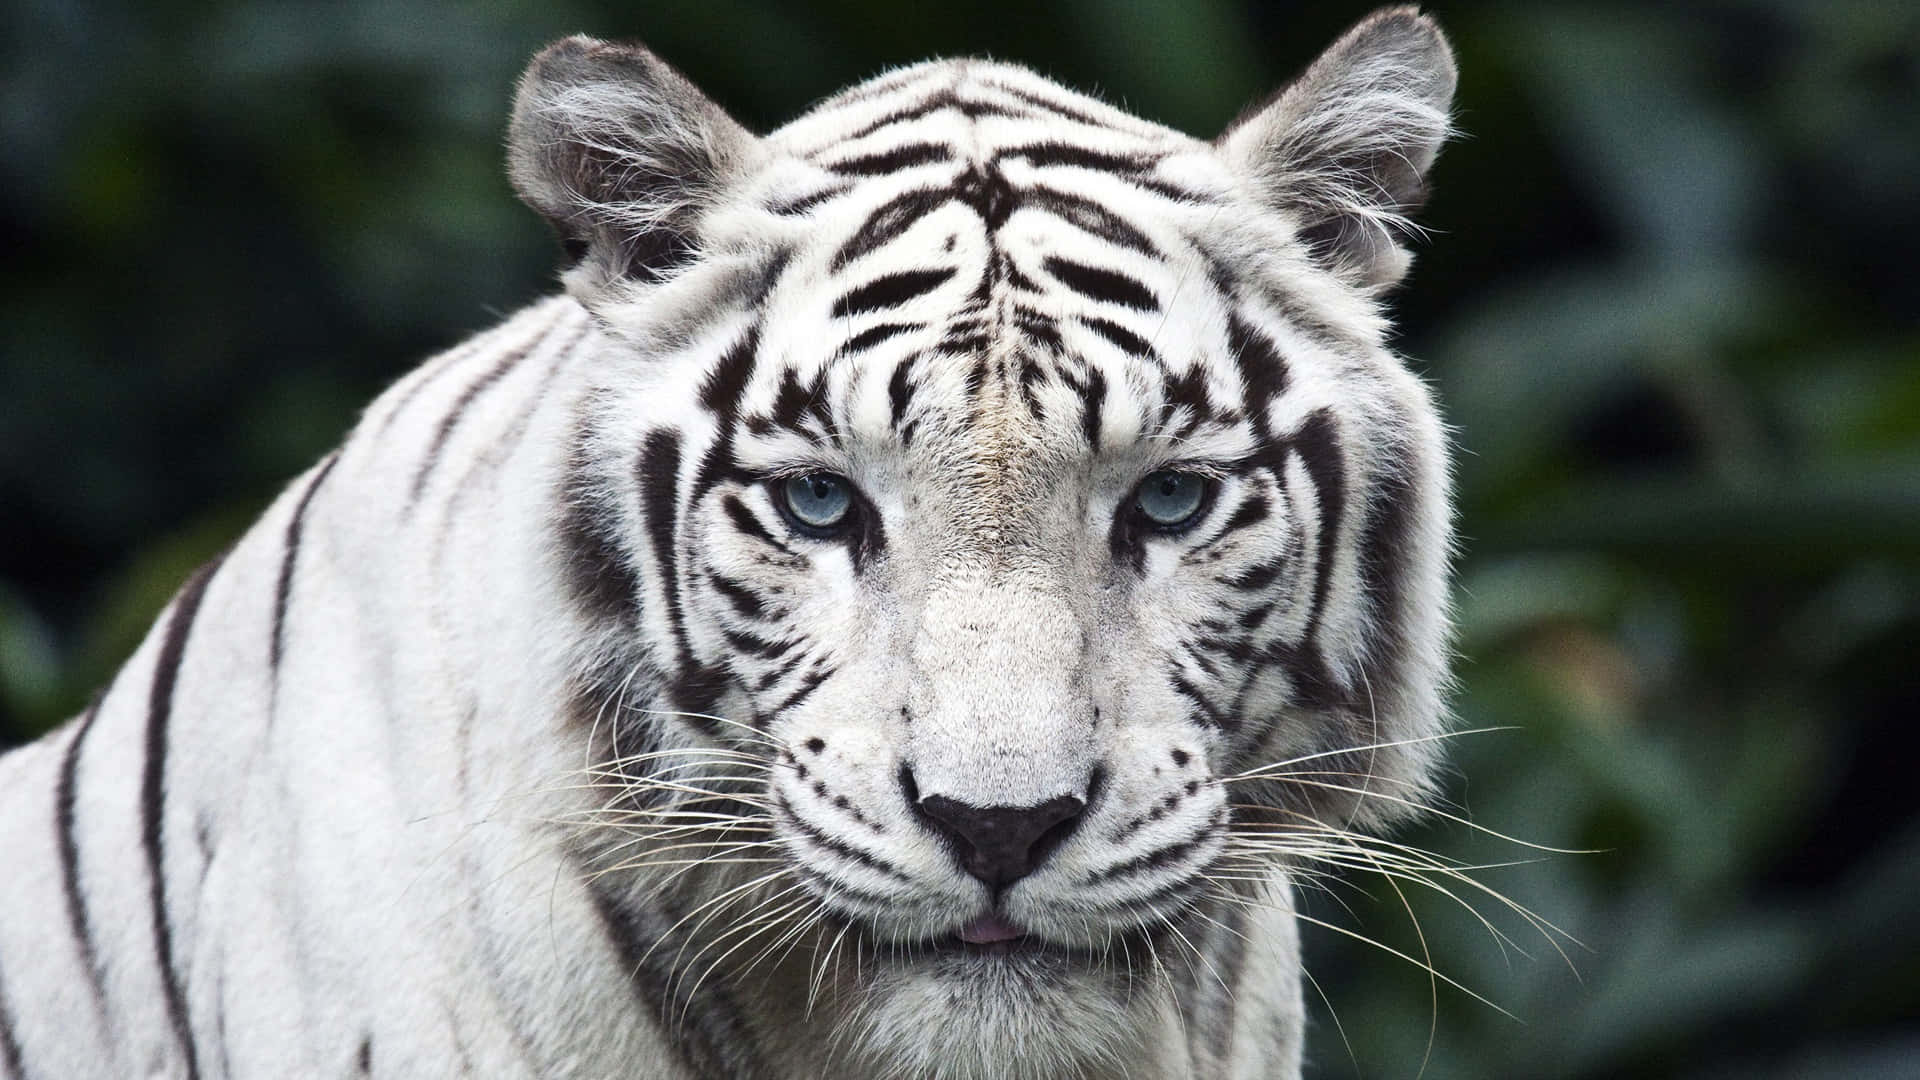 Imagende Un Tigre Blanco De Animales Salvajes En Primer Plano.